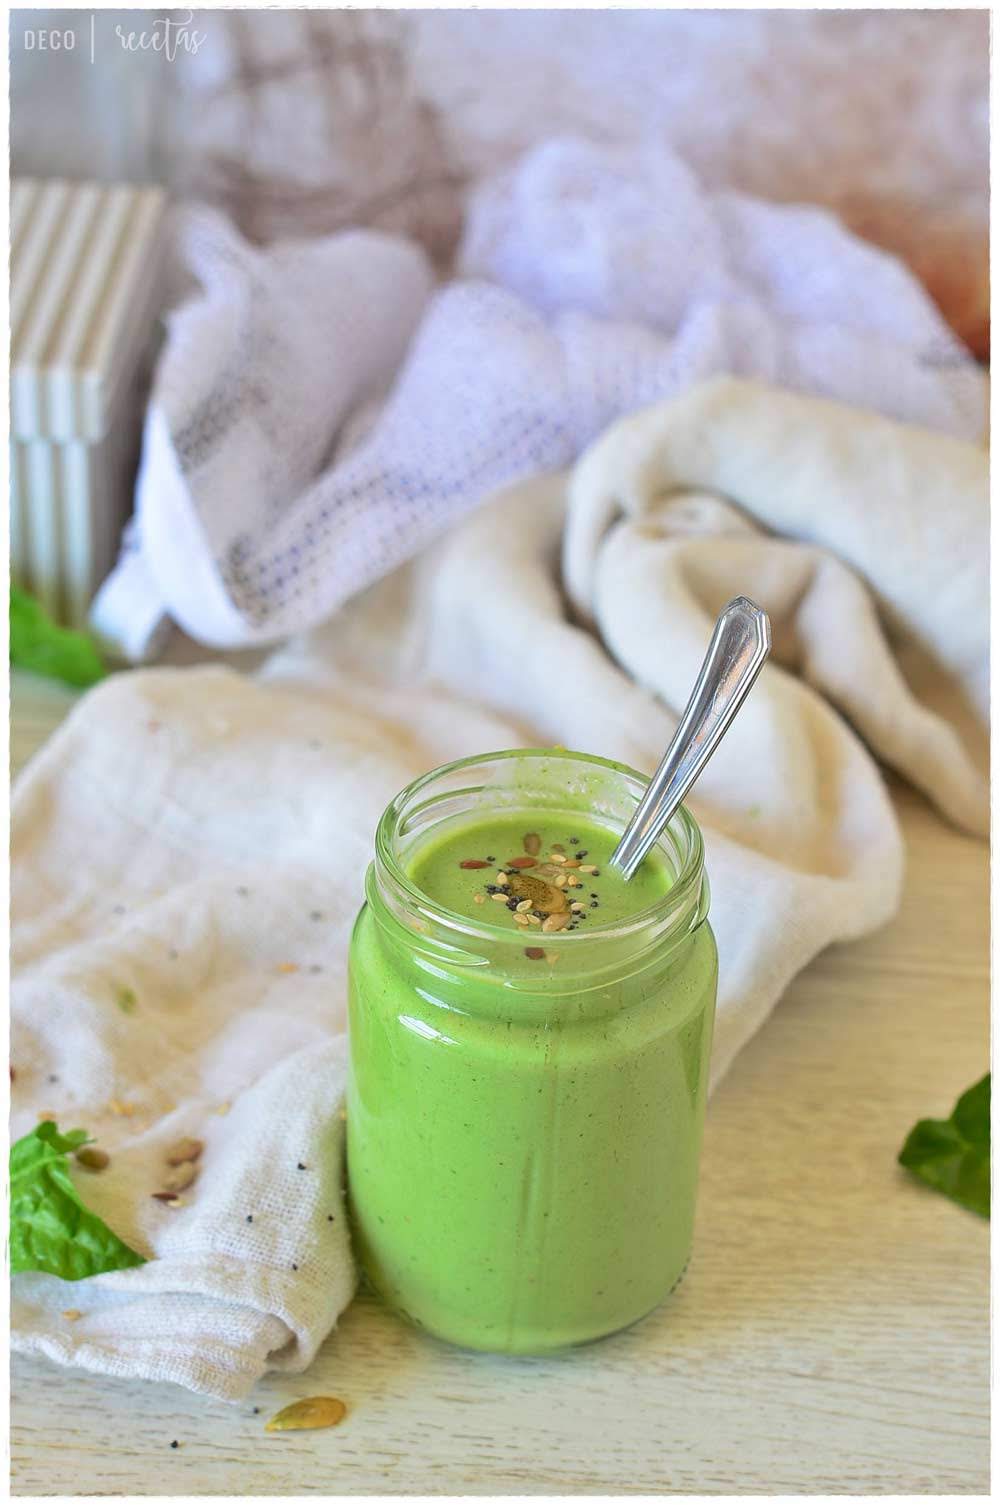 recetas smoothie sabrosos-3 batidos verdes saludables -batidoras de vaso para  smoothies | DECORECETAS